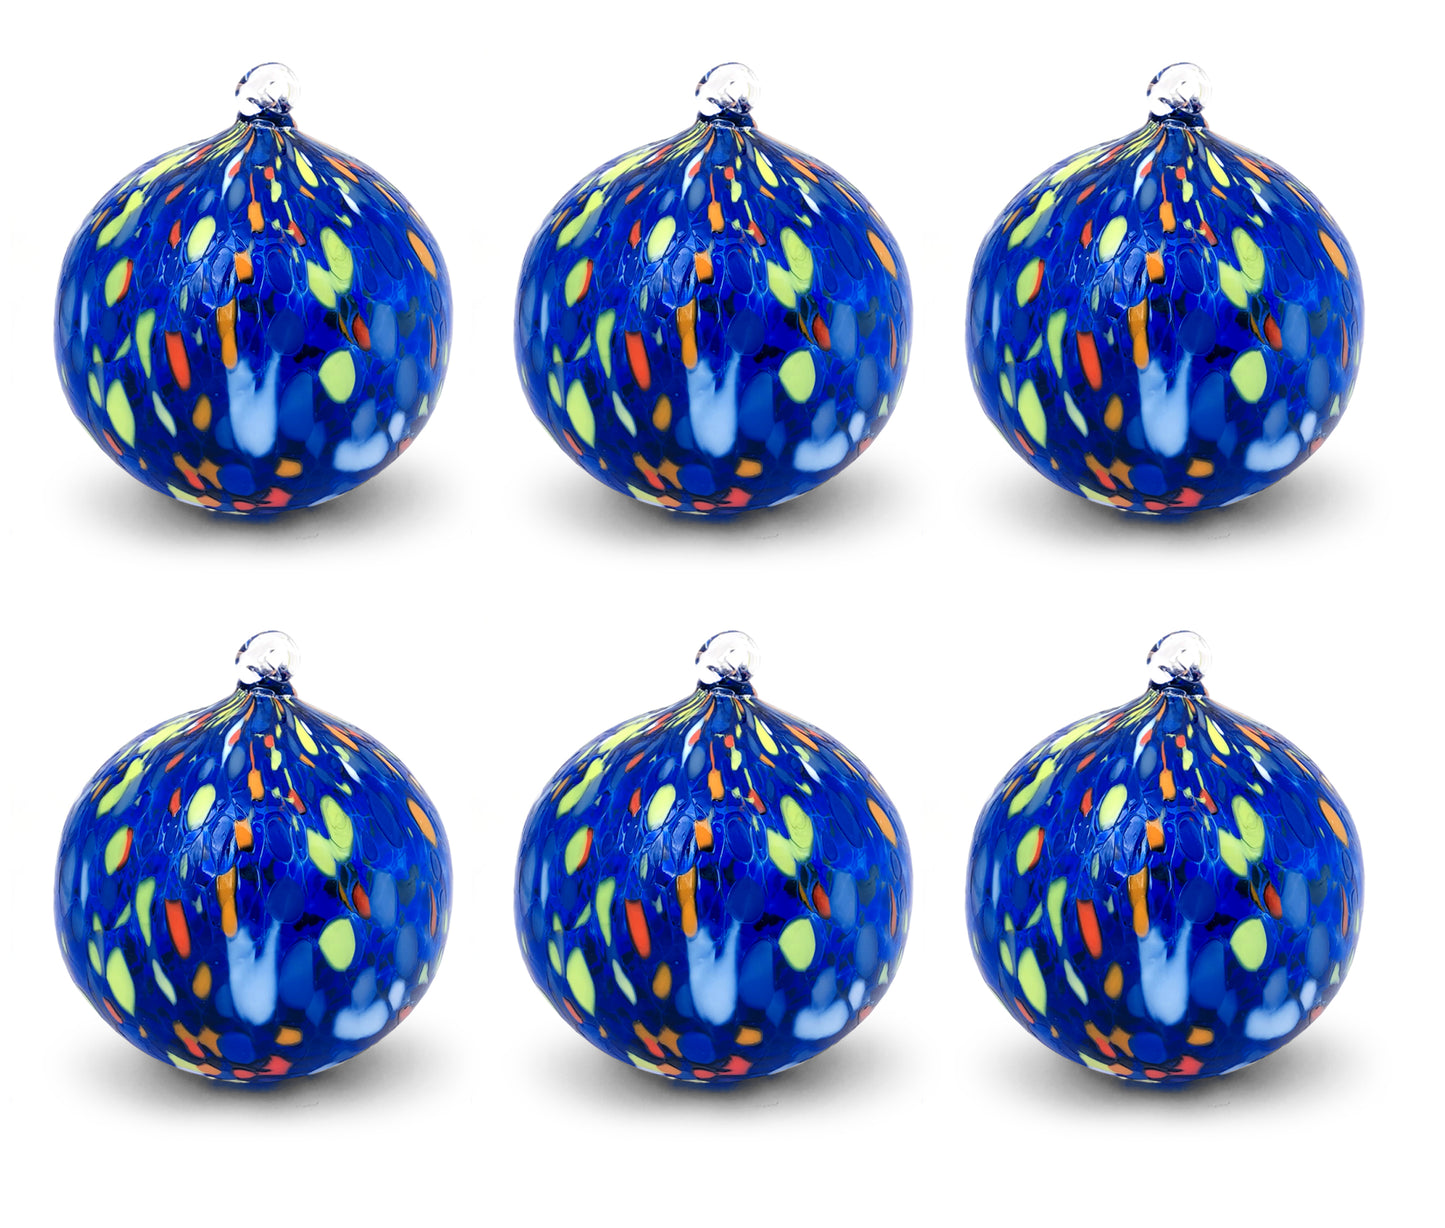 Palle di Natale in vetro “I Colori di Murano” confezione 6 palline grandi in vetro soffiato colorate lavorazione artigianale Ornamentali Decorazioni di Natale per Albero di Natale con Anello da Appendere Ø 9 cm.